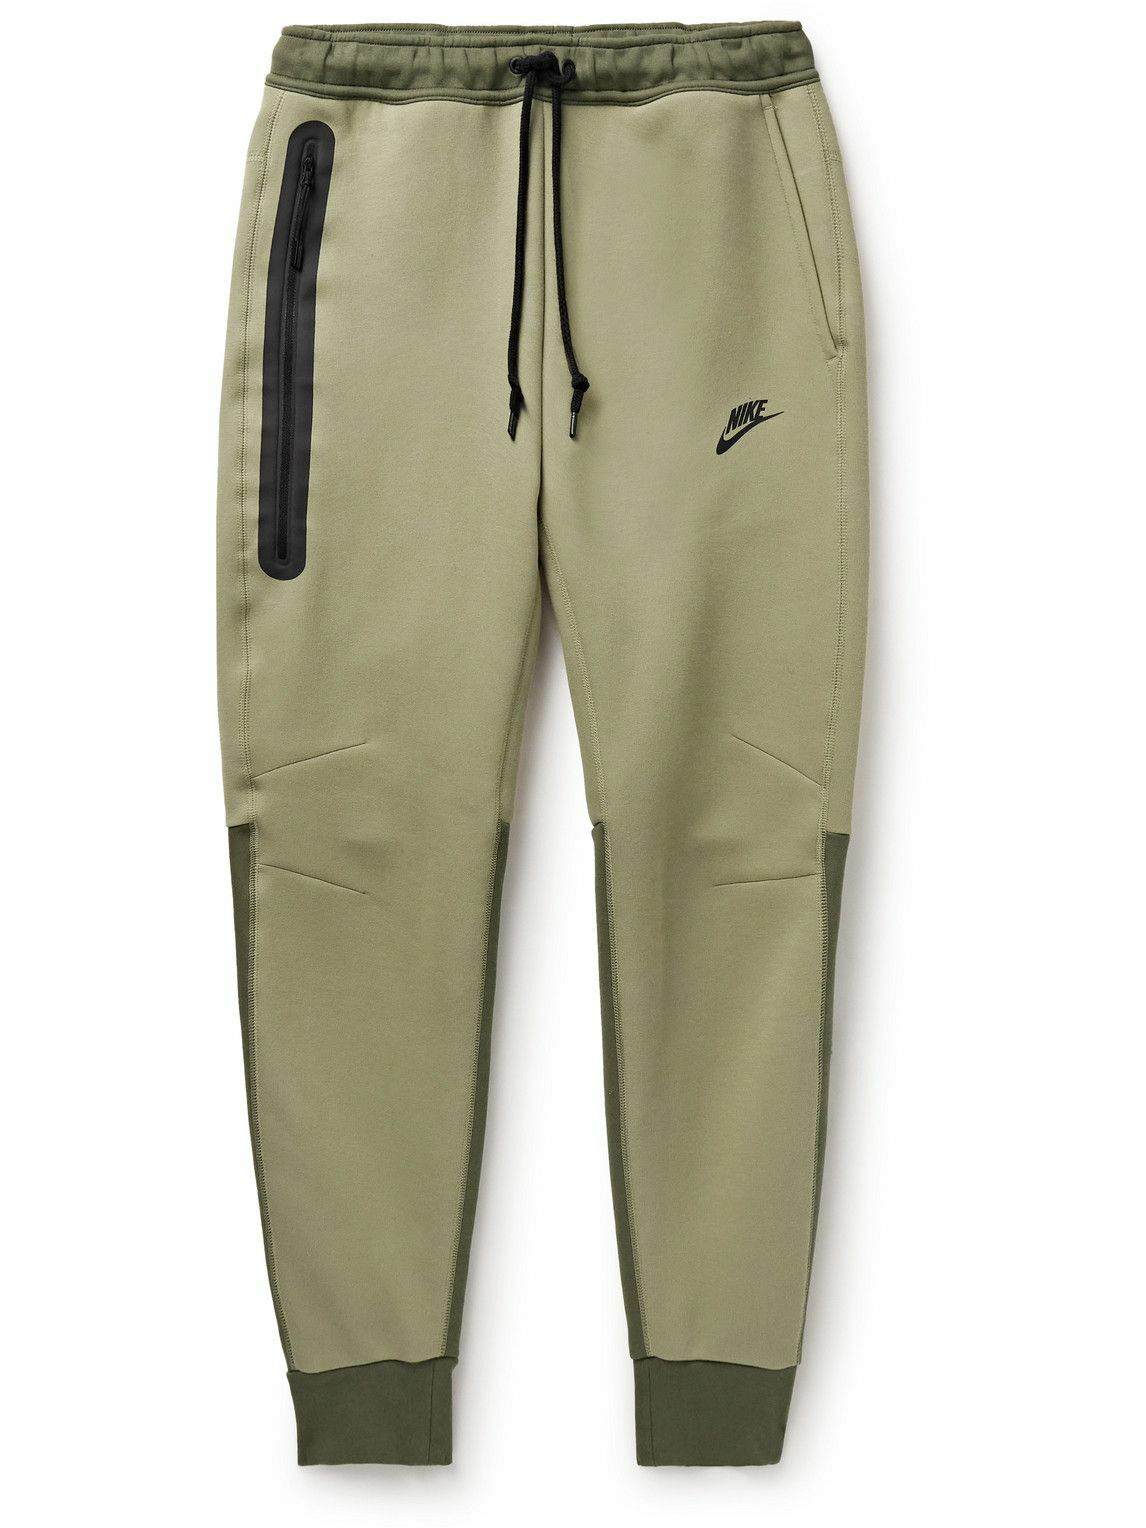 Nike Joggers Smoke Black Cotton Sweatpants White... - Depop